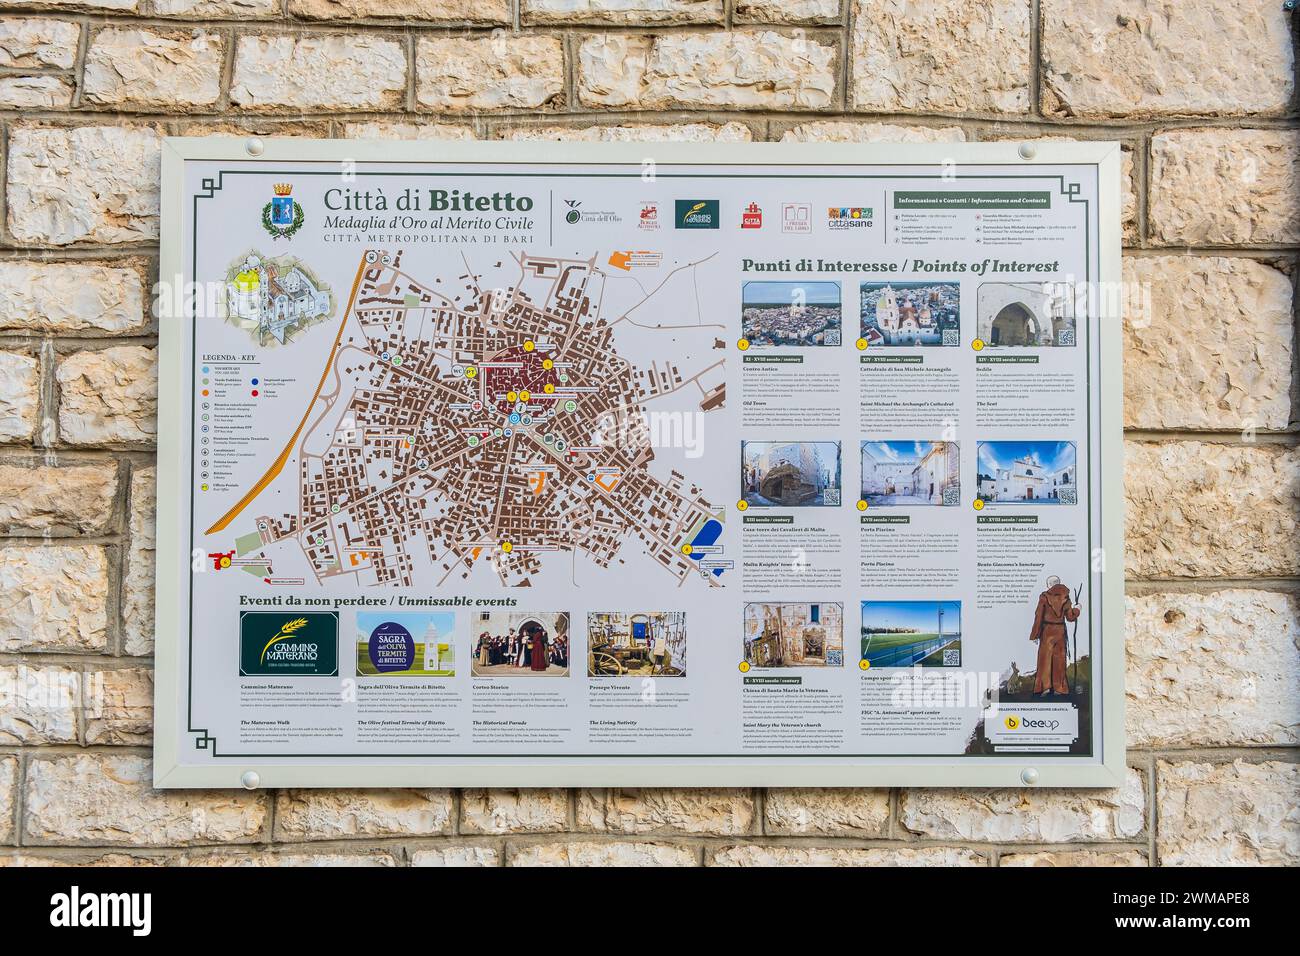 Pannello informativo con mappa della città medievale di Bitetto, provincia di Bari, regione Puglia (Puglia), Italia meridionale, Europa - 19 settembre 2022 Foto Stock